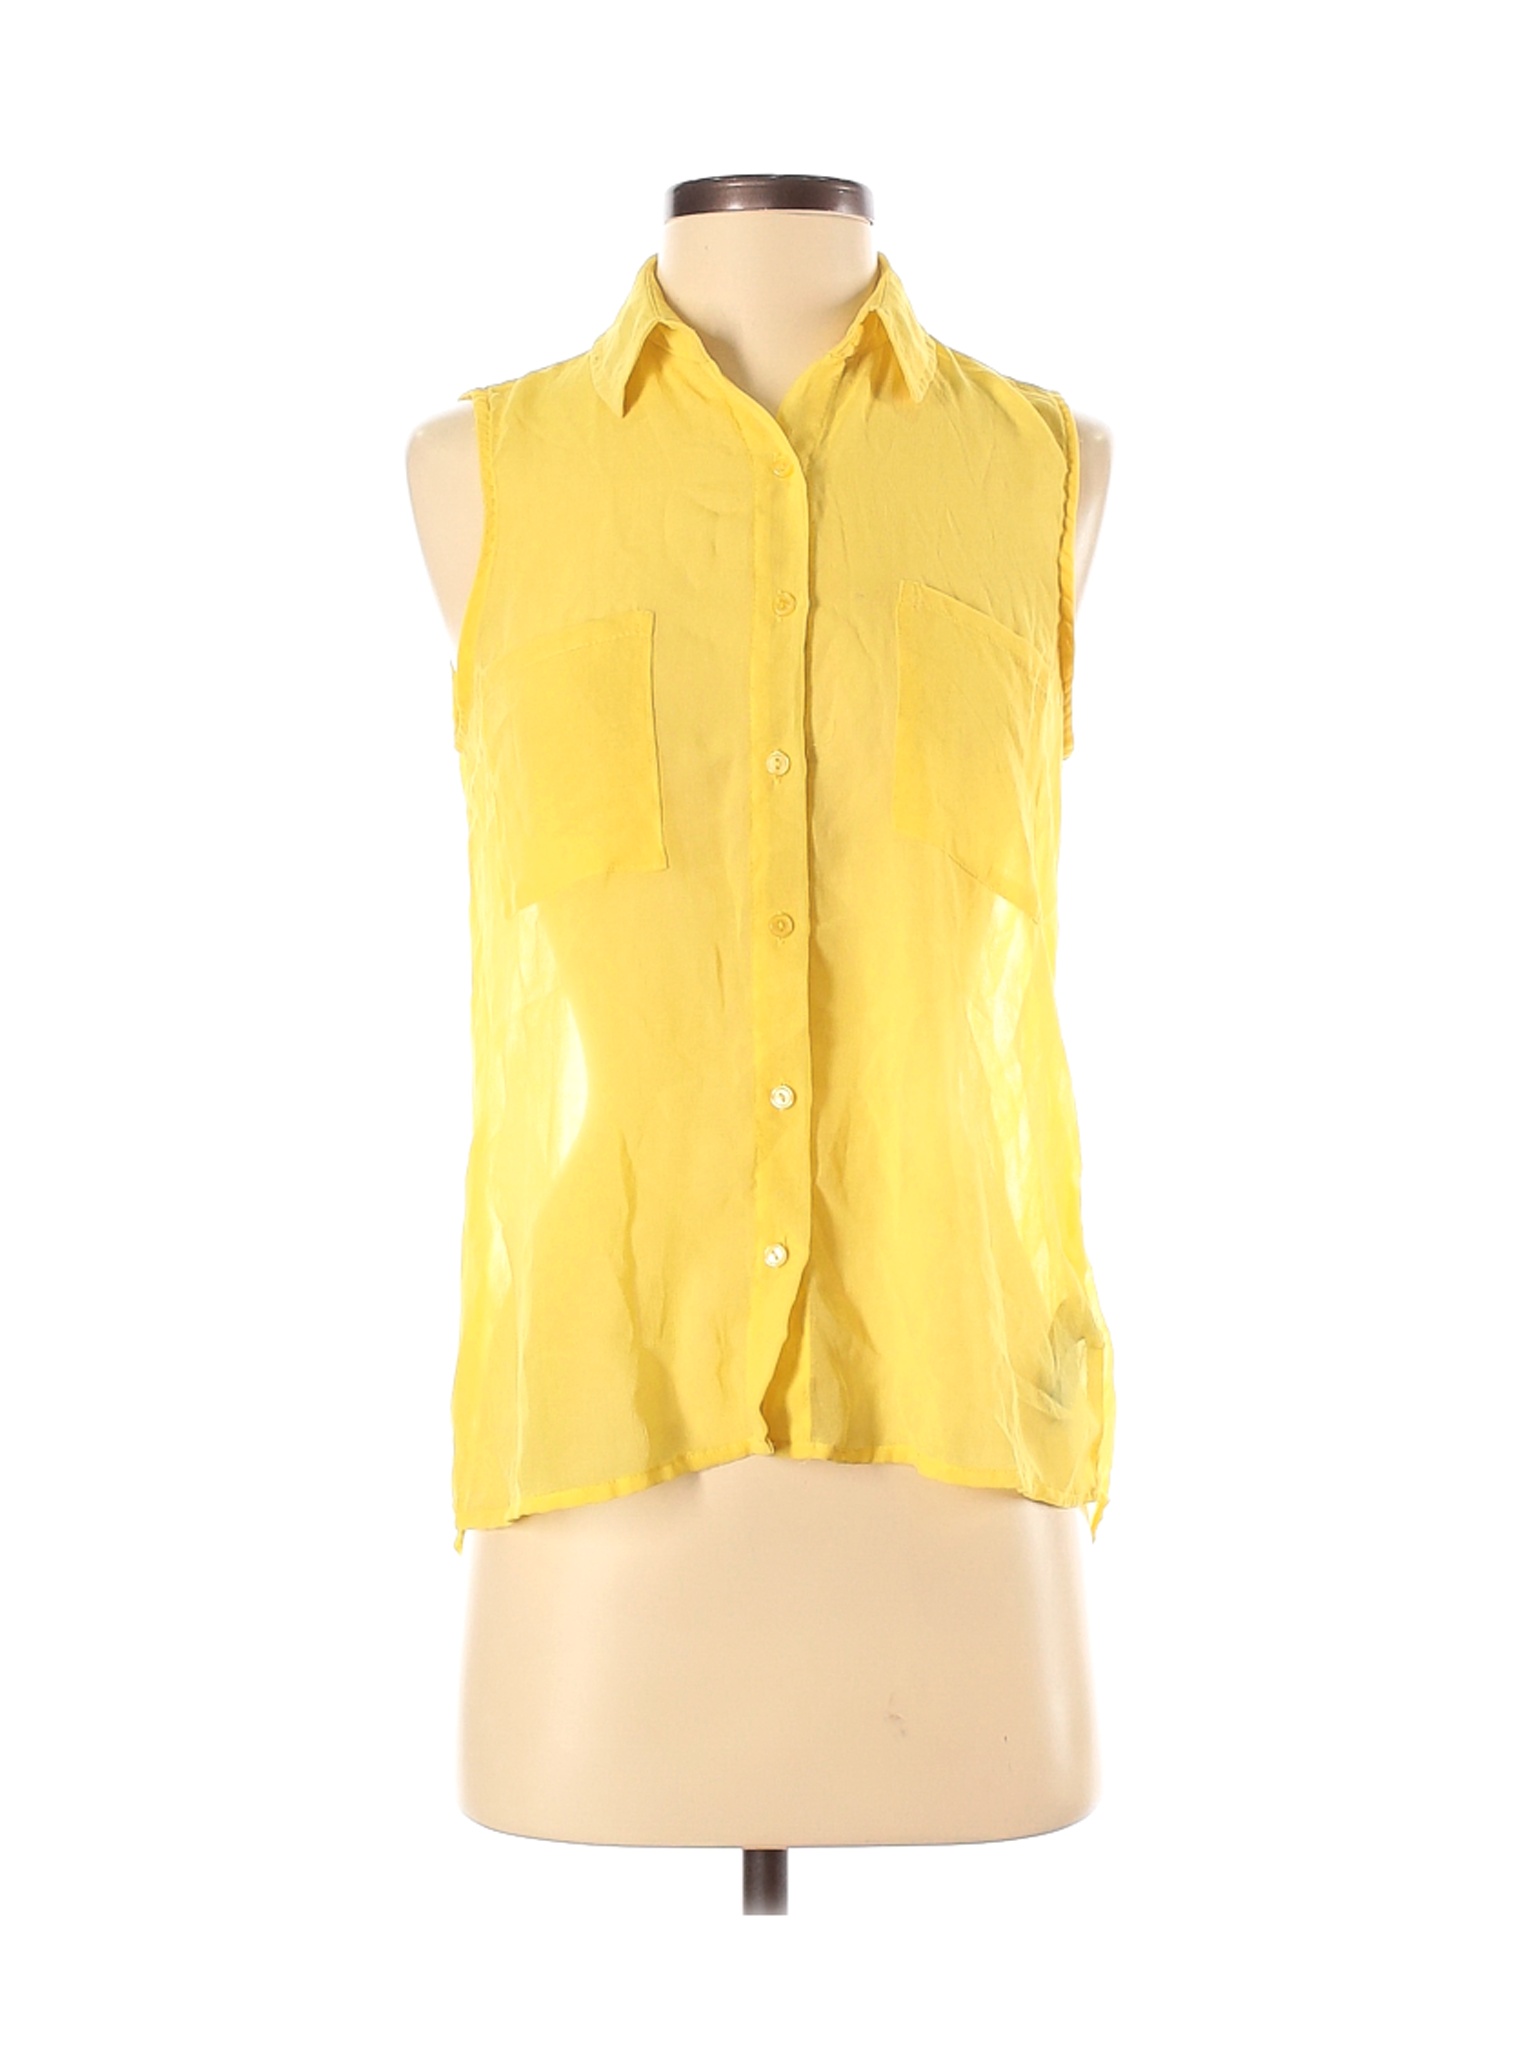 Forever 21 Women Yellow Sleeveless Blouse S | eBay